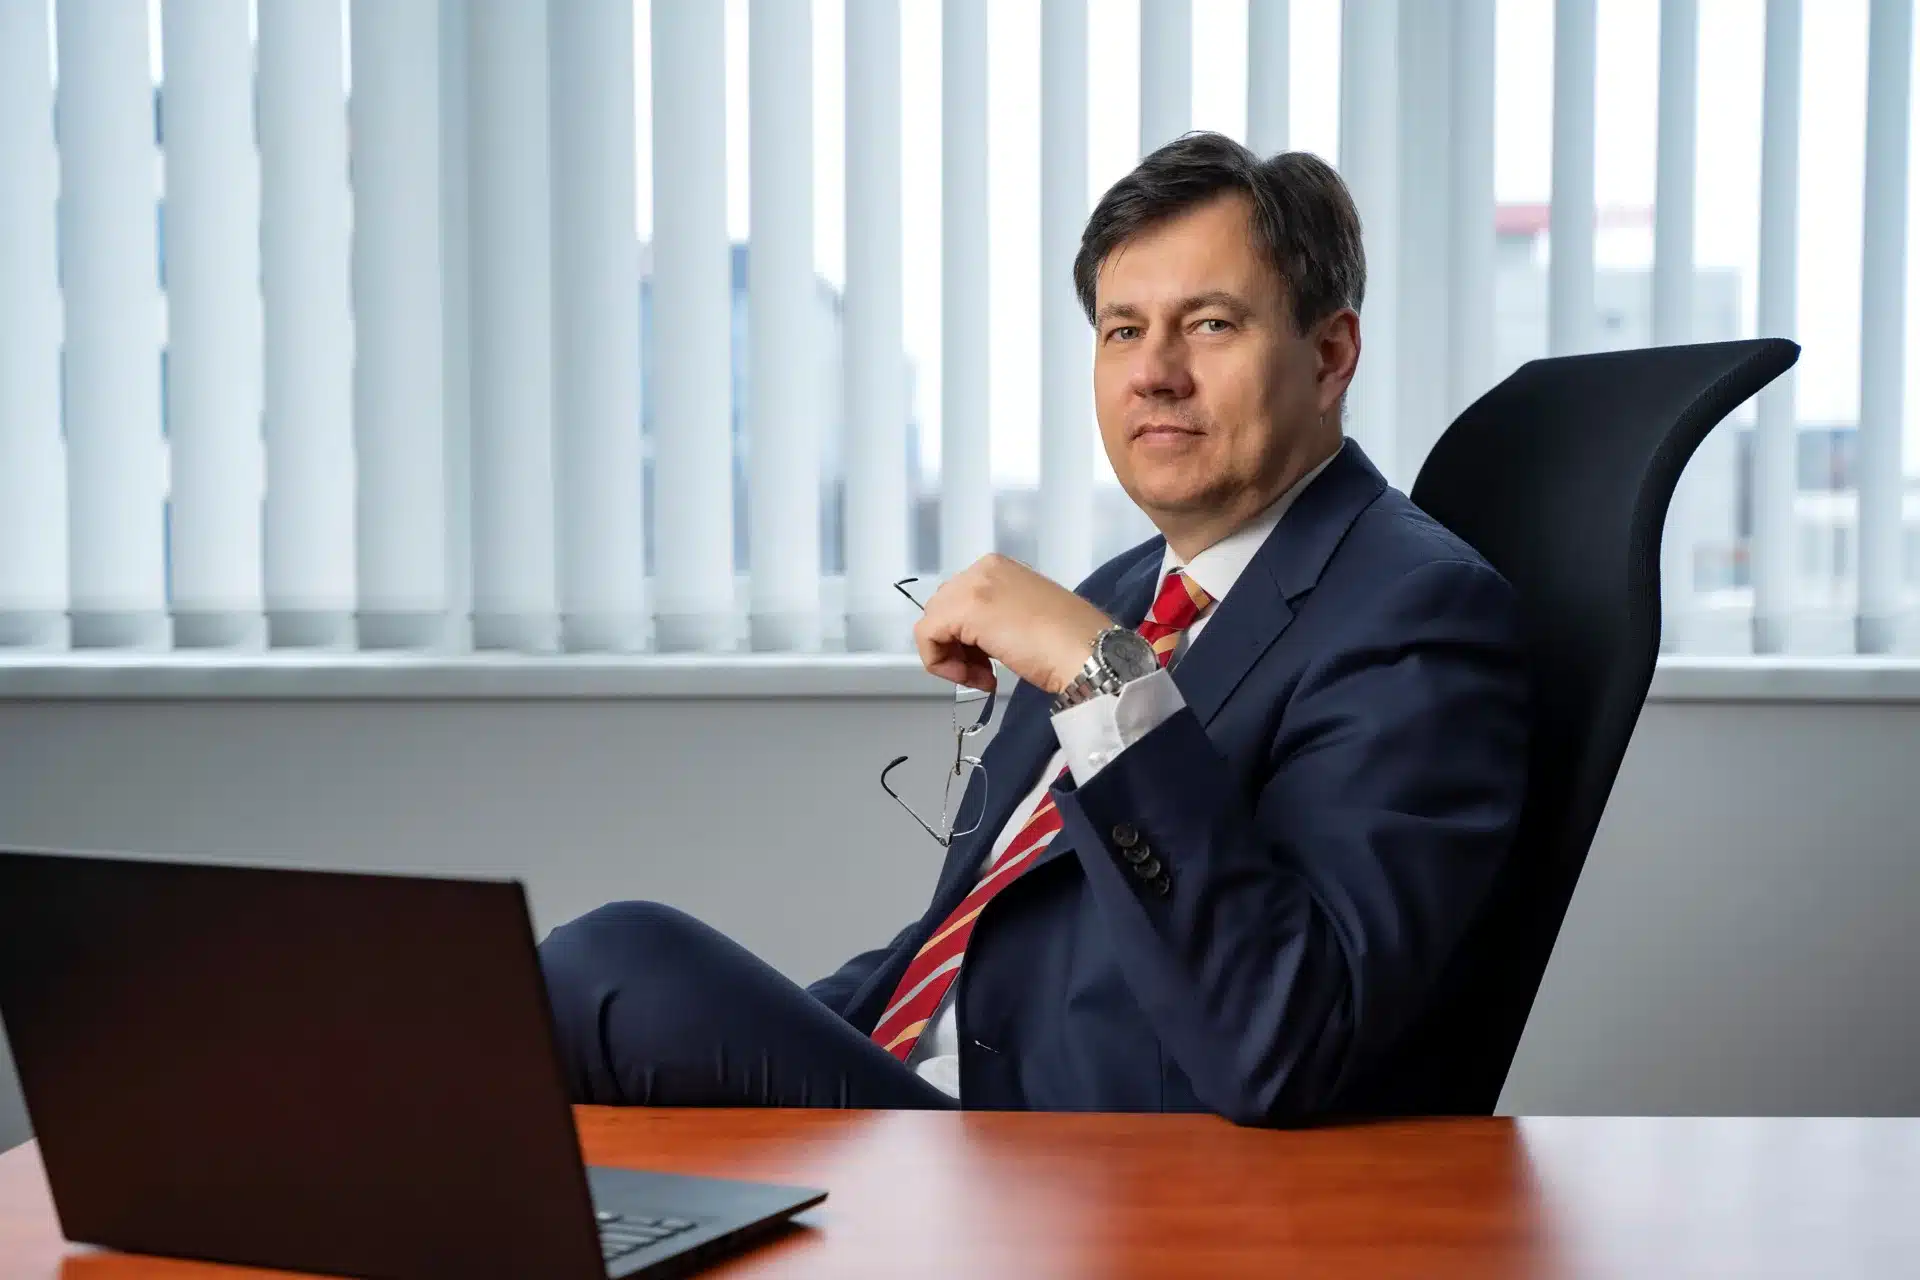 Sławomir Majchrowski, CEO of Selena Group